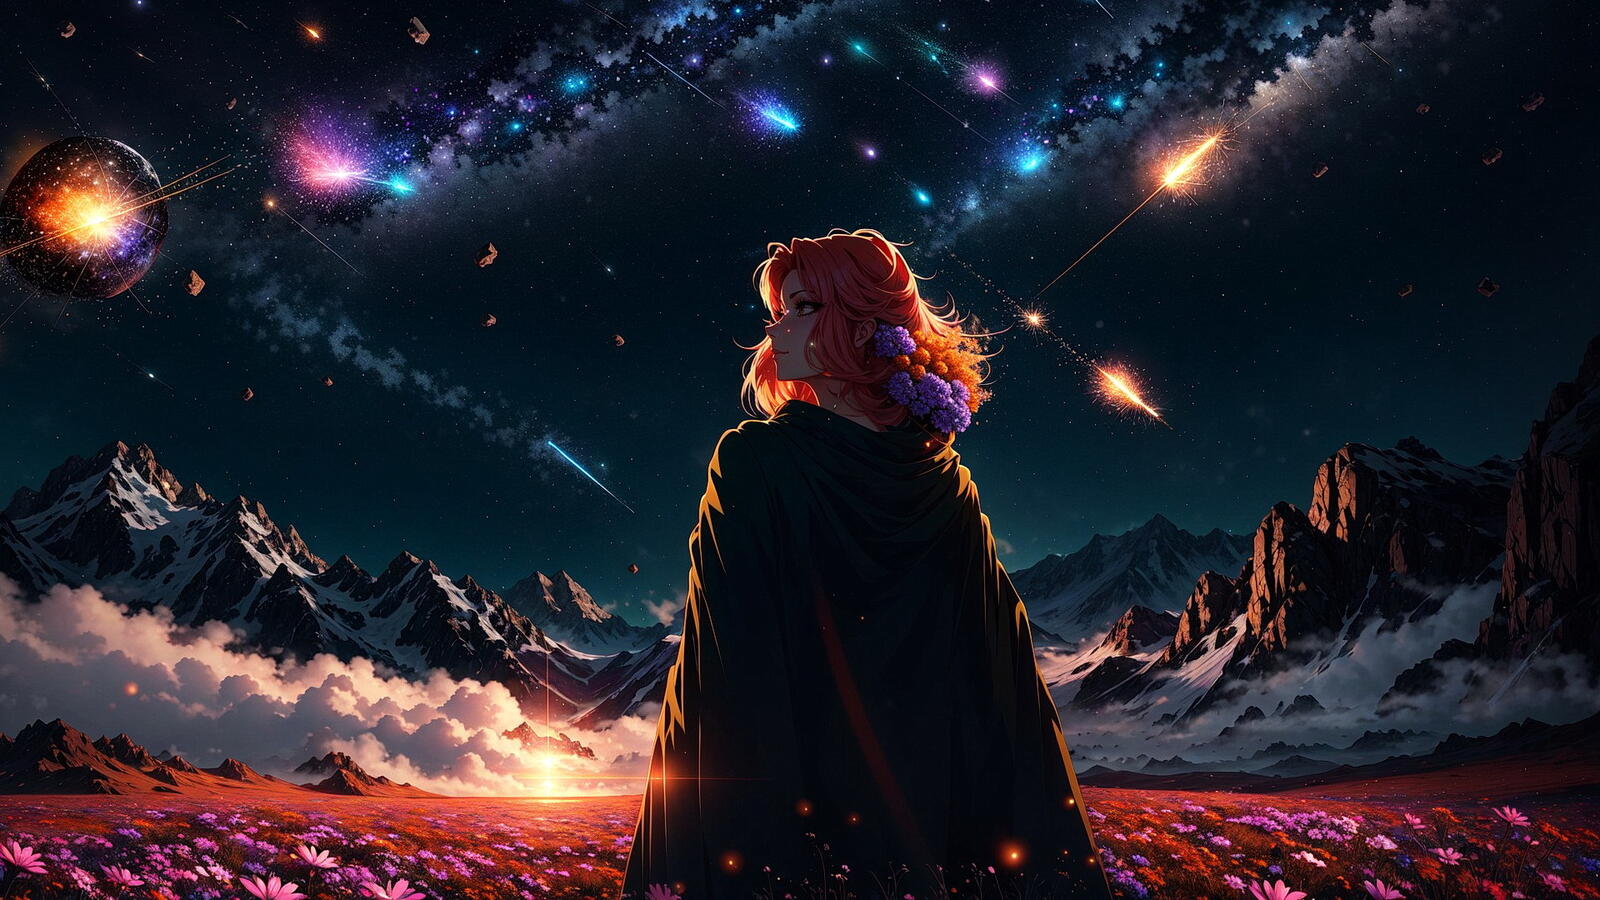 Бесплатное фото Рыжая девушка в плаще на фоне горного пейзажа и звездного неба